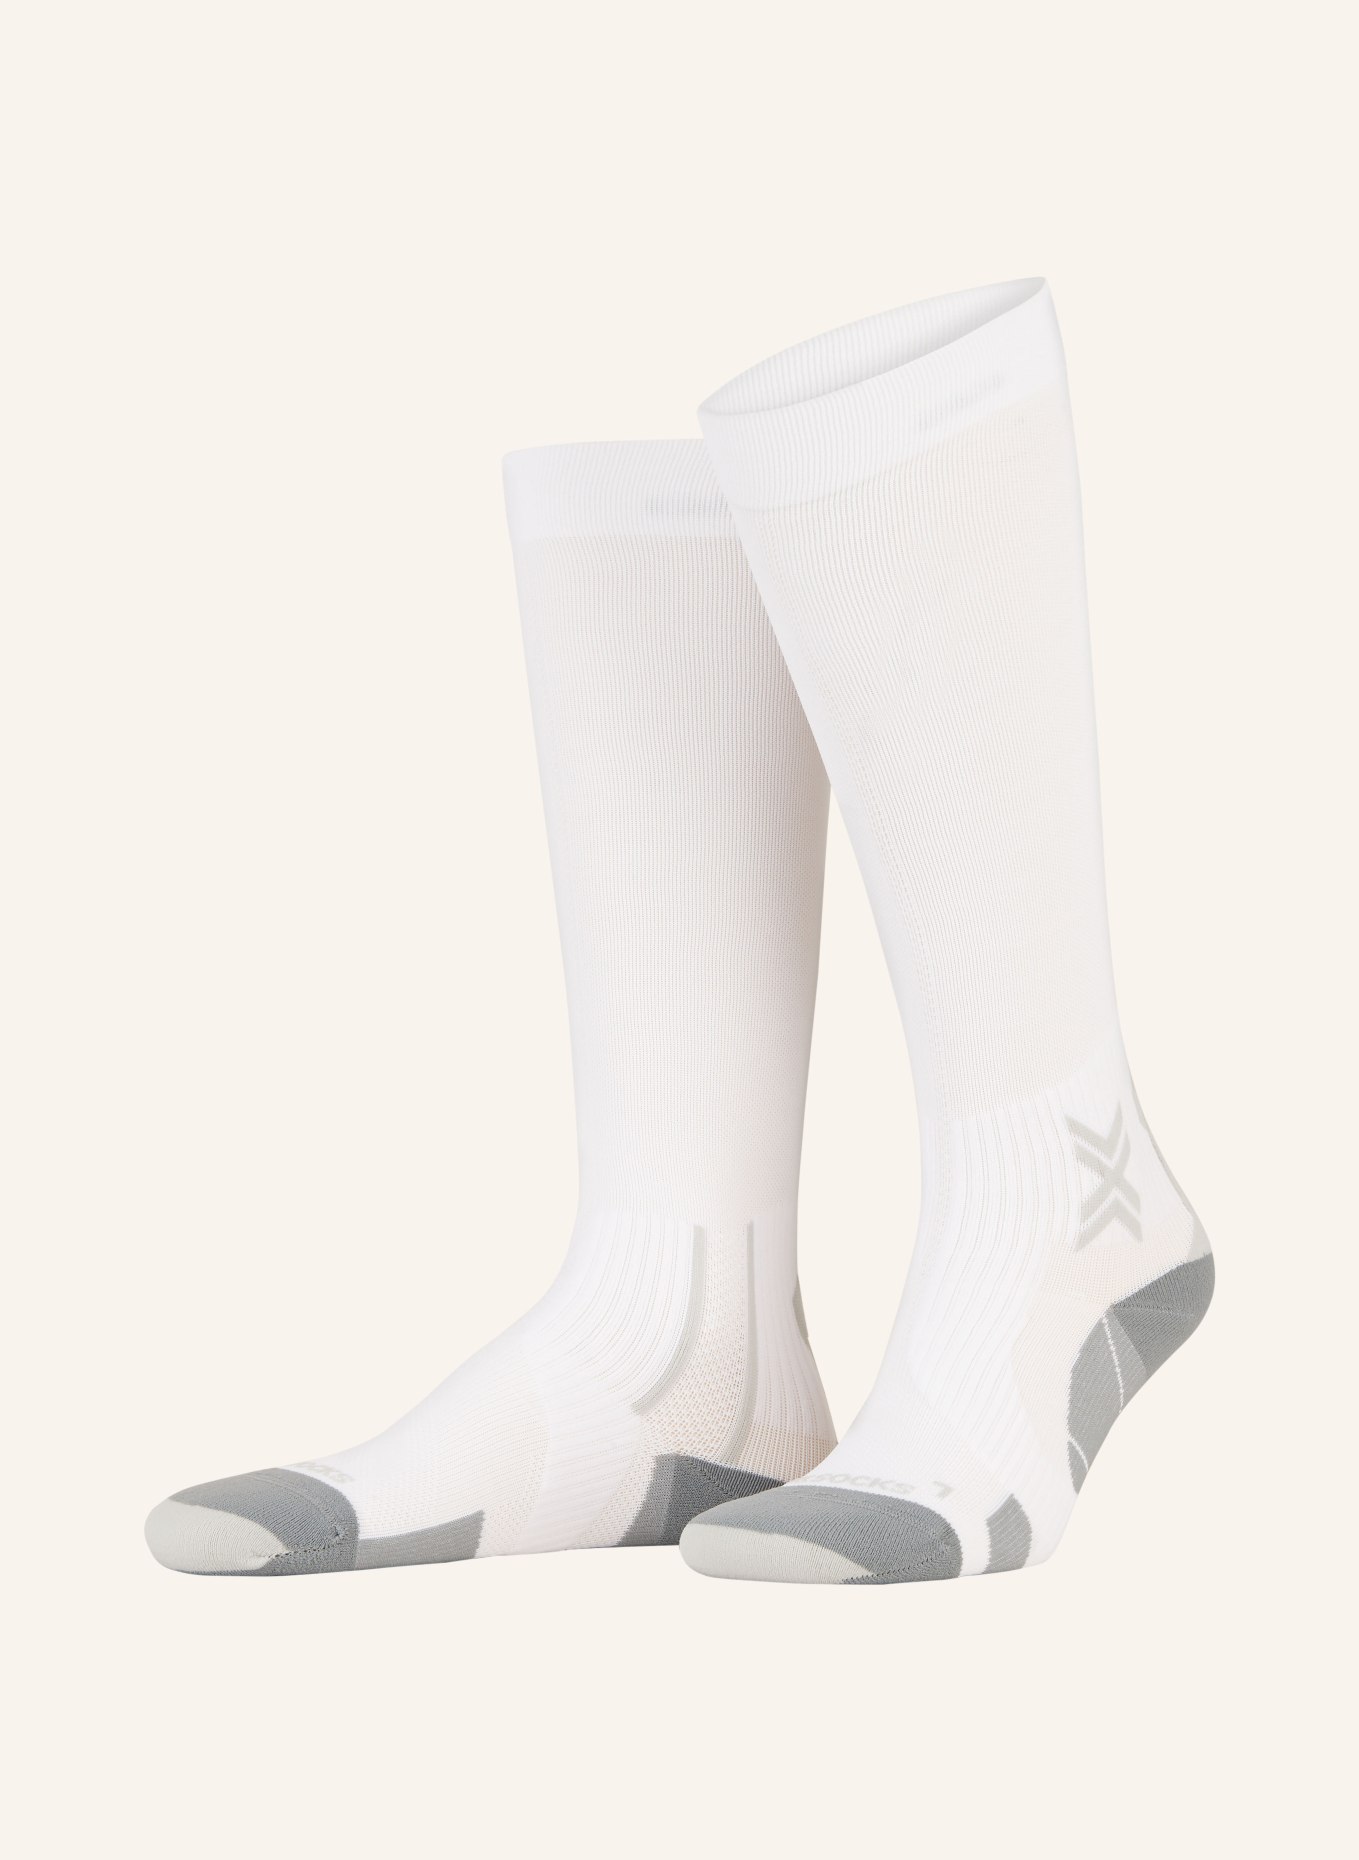 X-SOCKS Laufsocken RUN PERFORM OTC, Farbe: W002 ARCTIC WHITE/PEARL GREY (Bild 1)